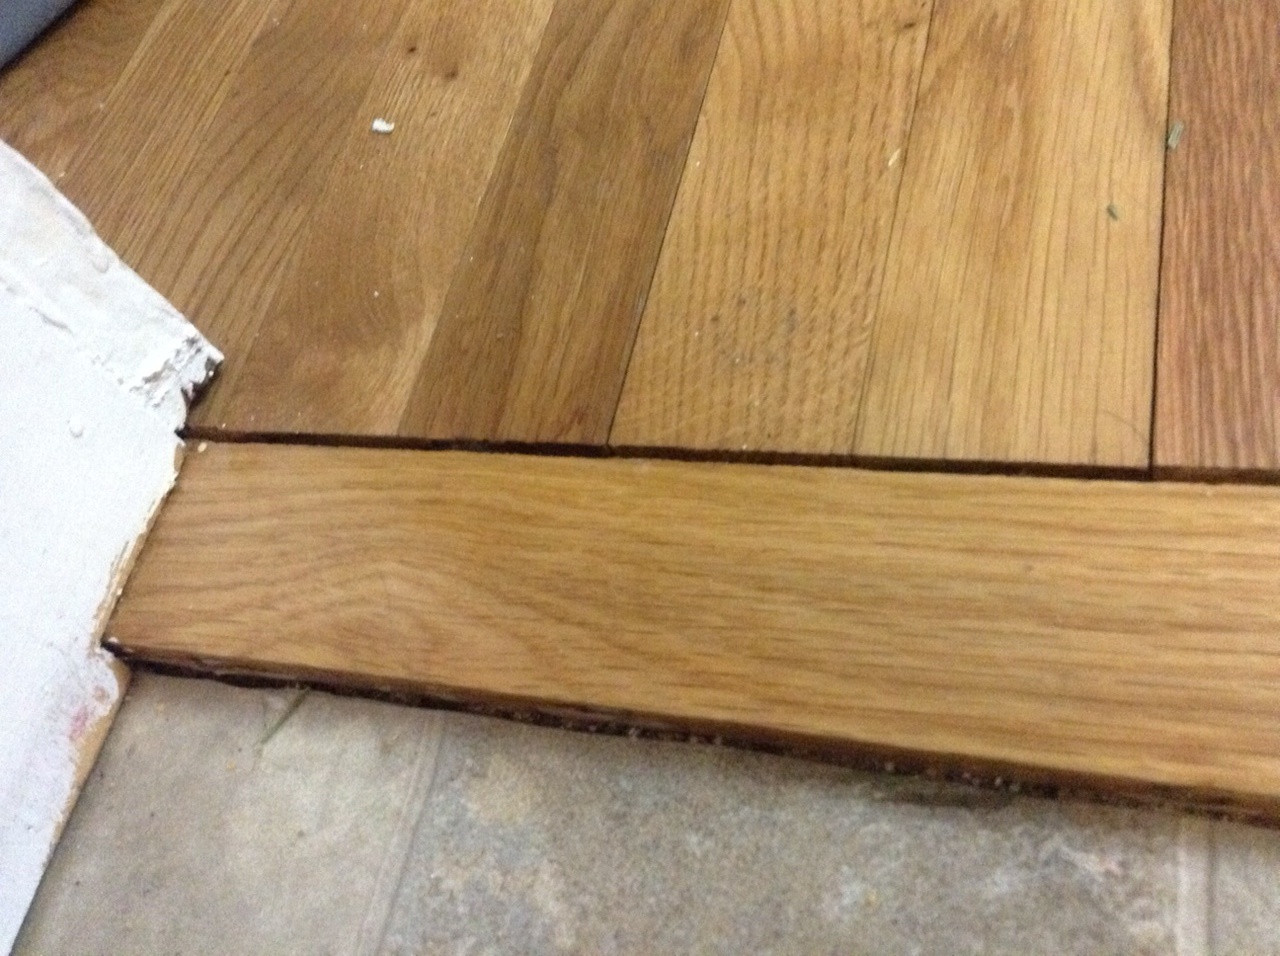 glue down hardwood floor repair of wood floor techniques 101 in gap shrinkage cork